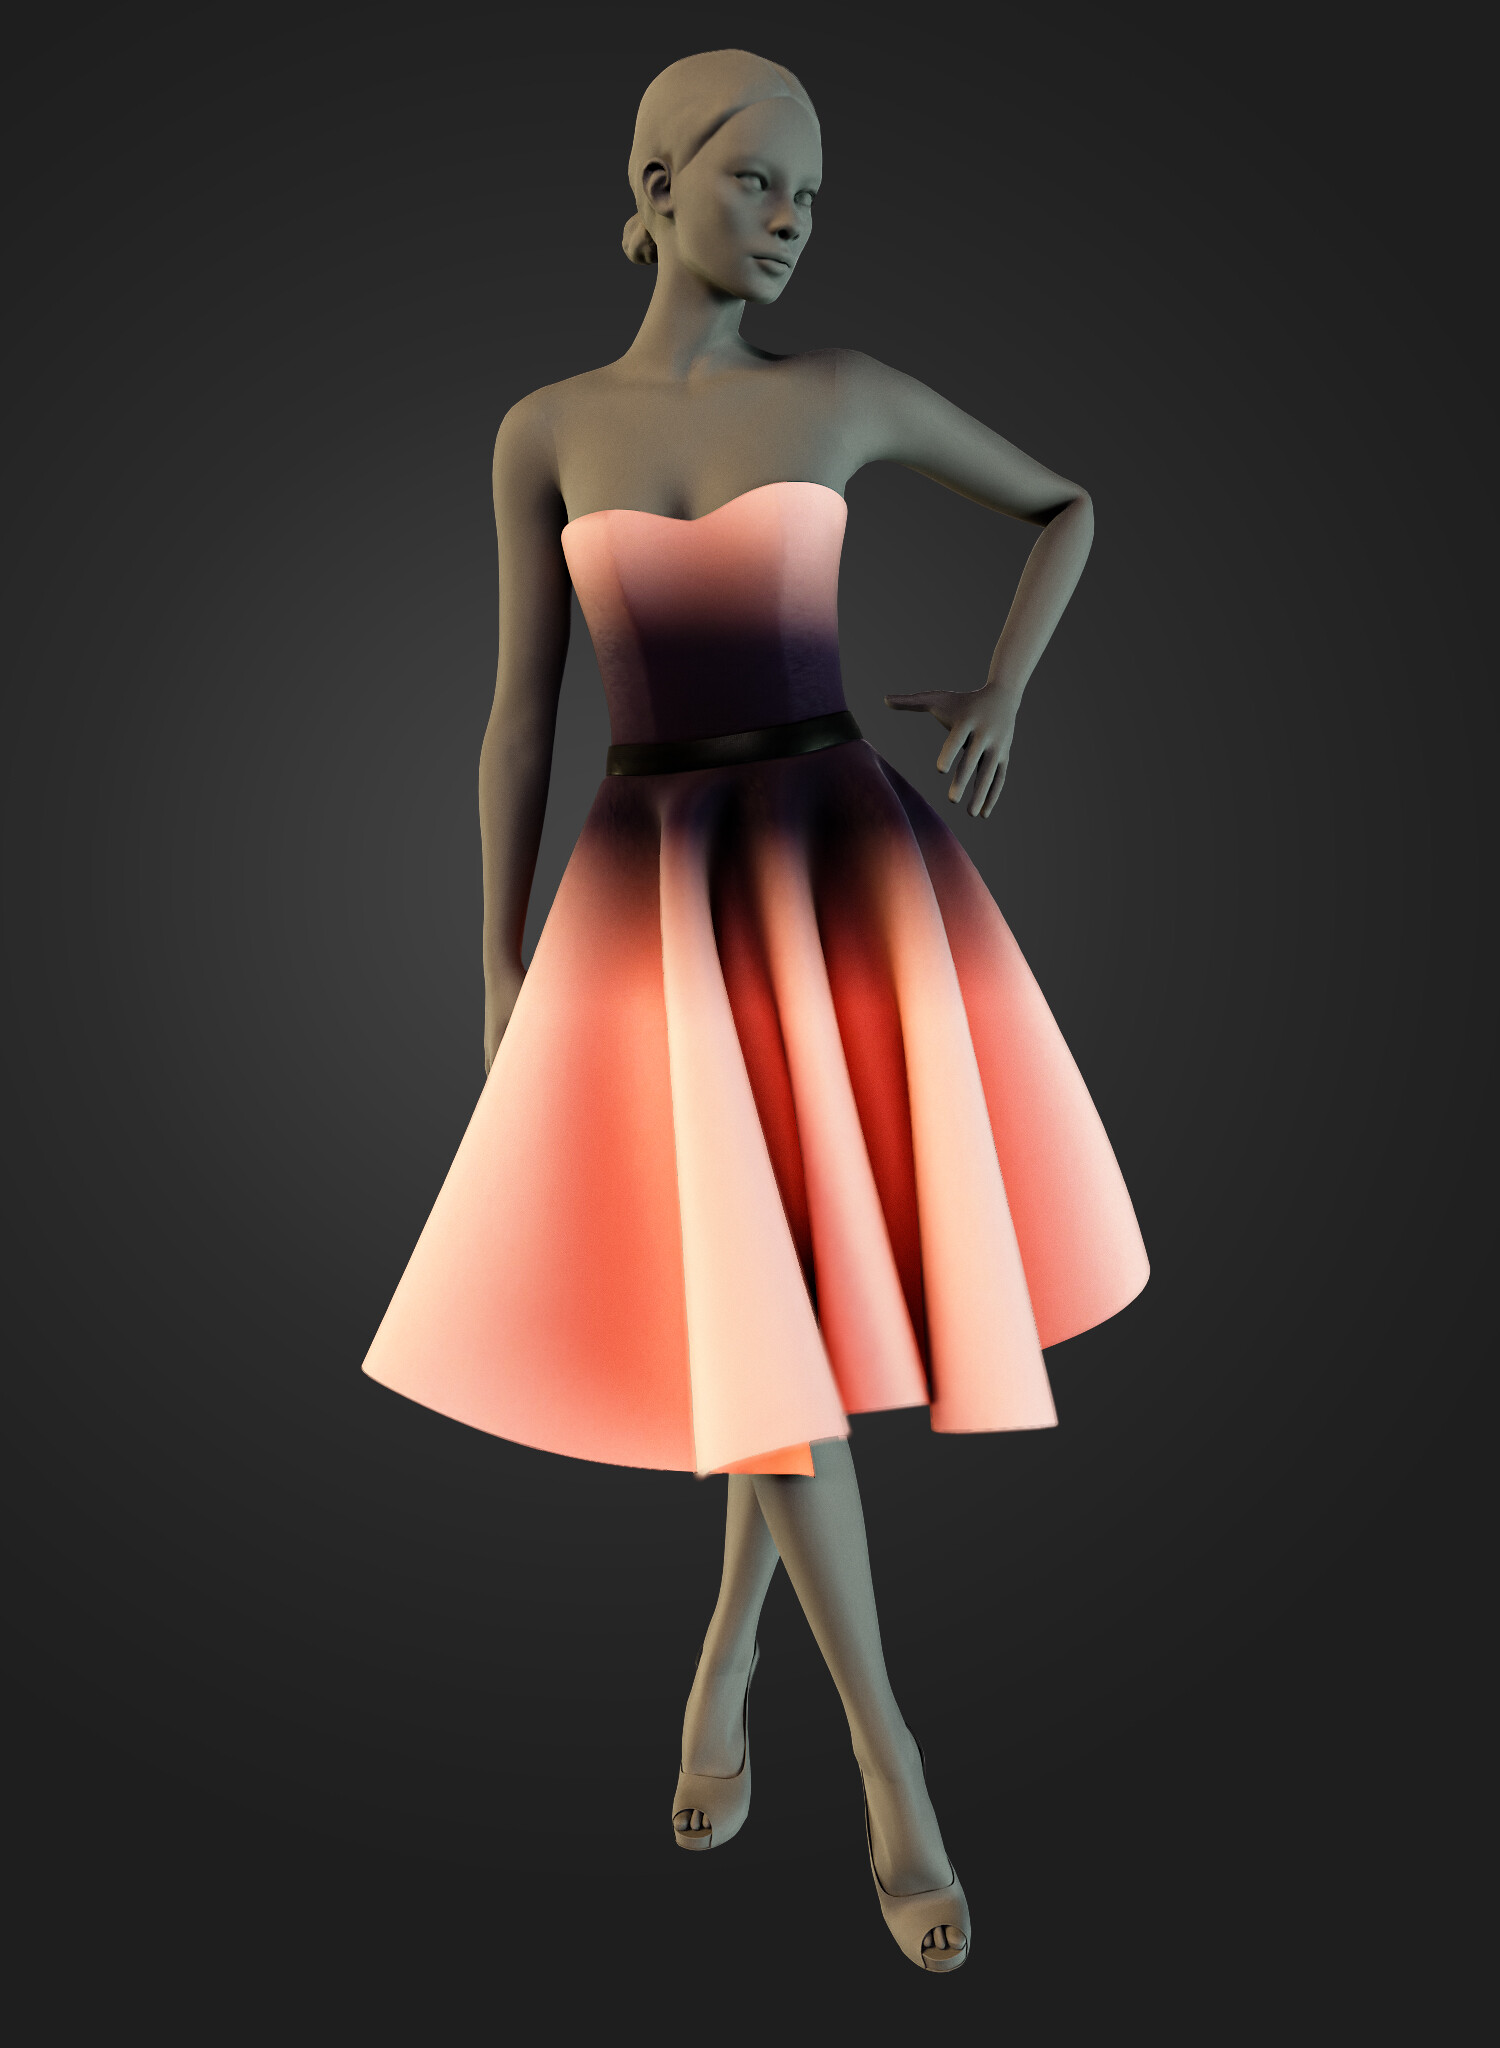 ArtStation - CUTE DRESS Marvelous Designer, Projects Files: Zprj , OBJ ...